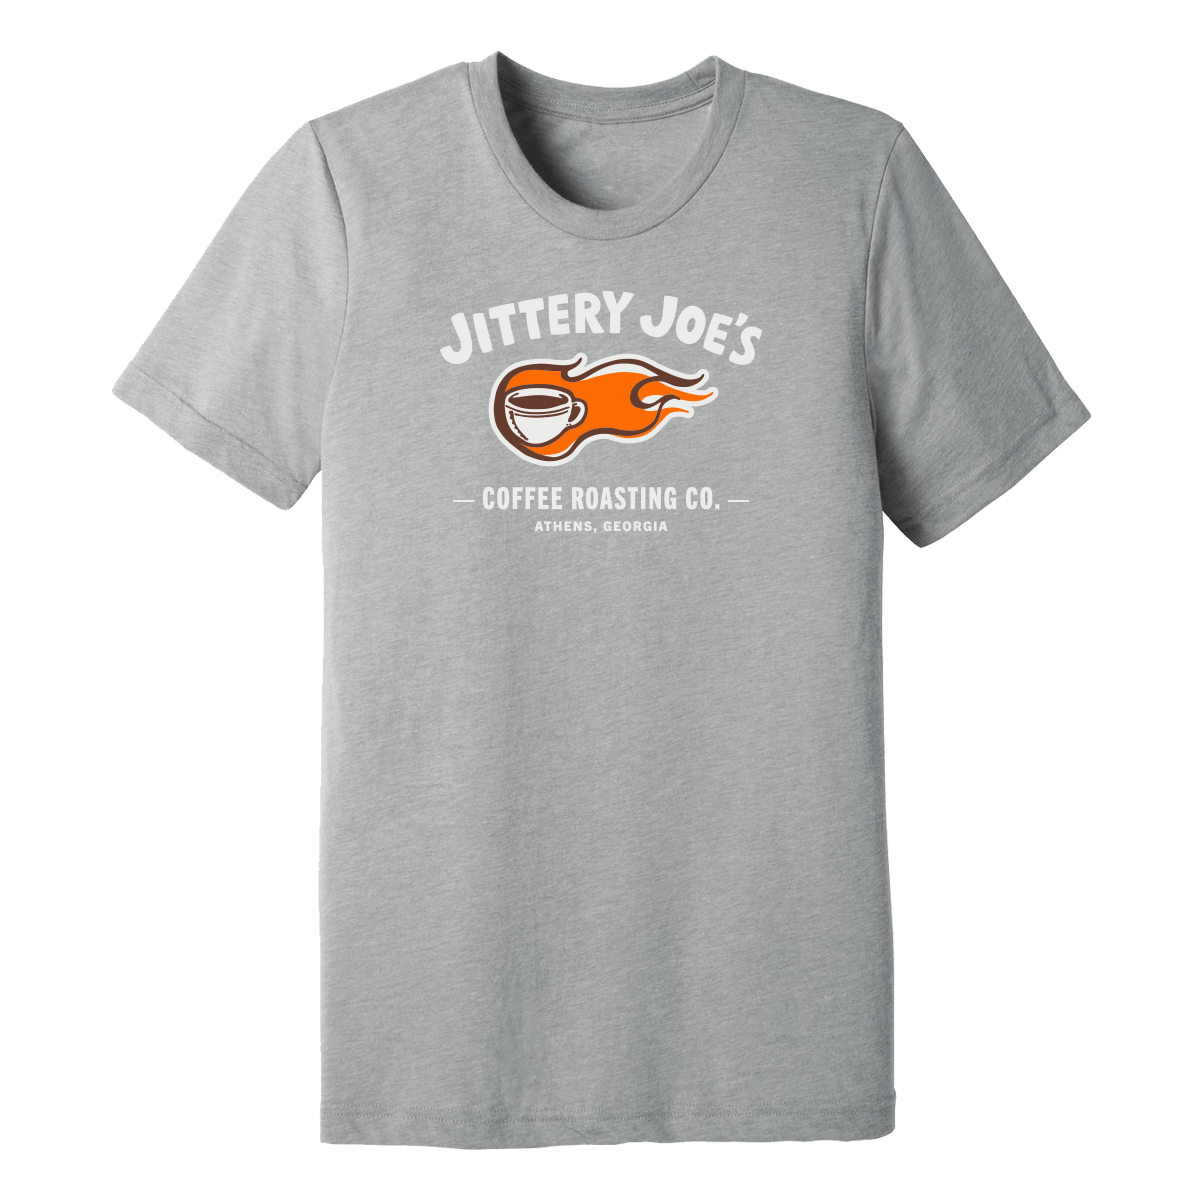 Jittery Joe's Tour de Force T-shirt - Jittery Joe's Coffee